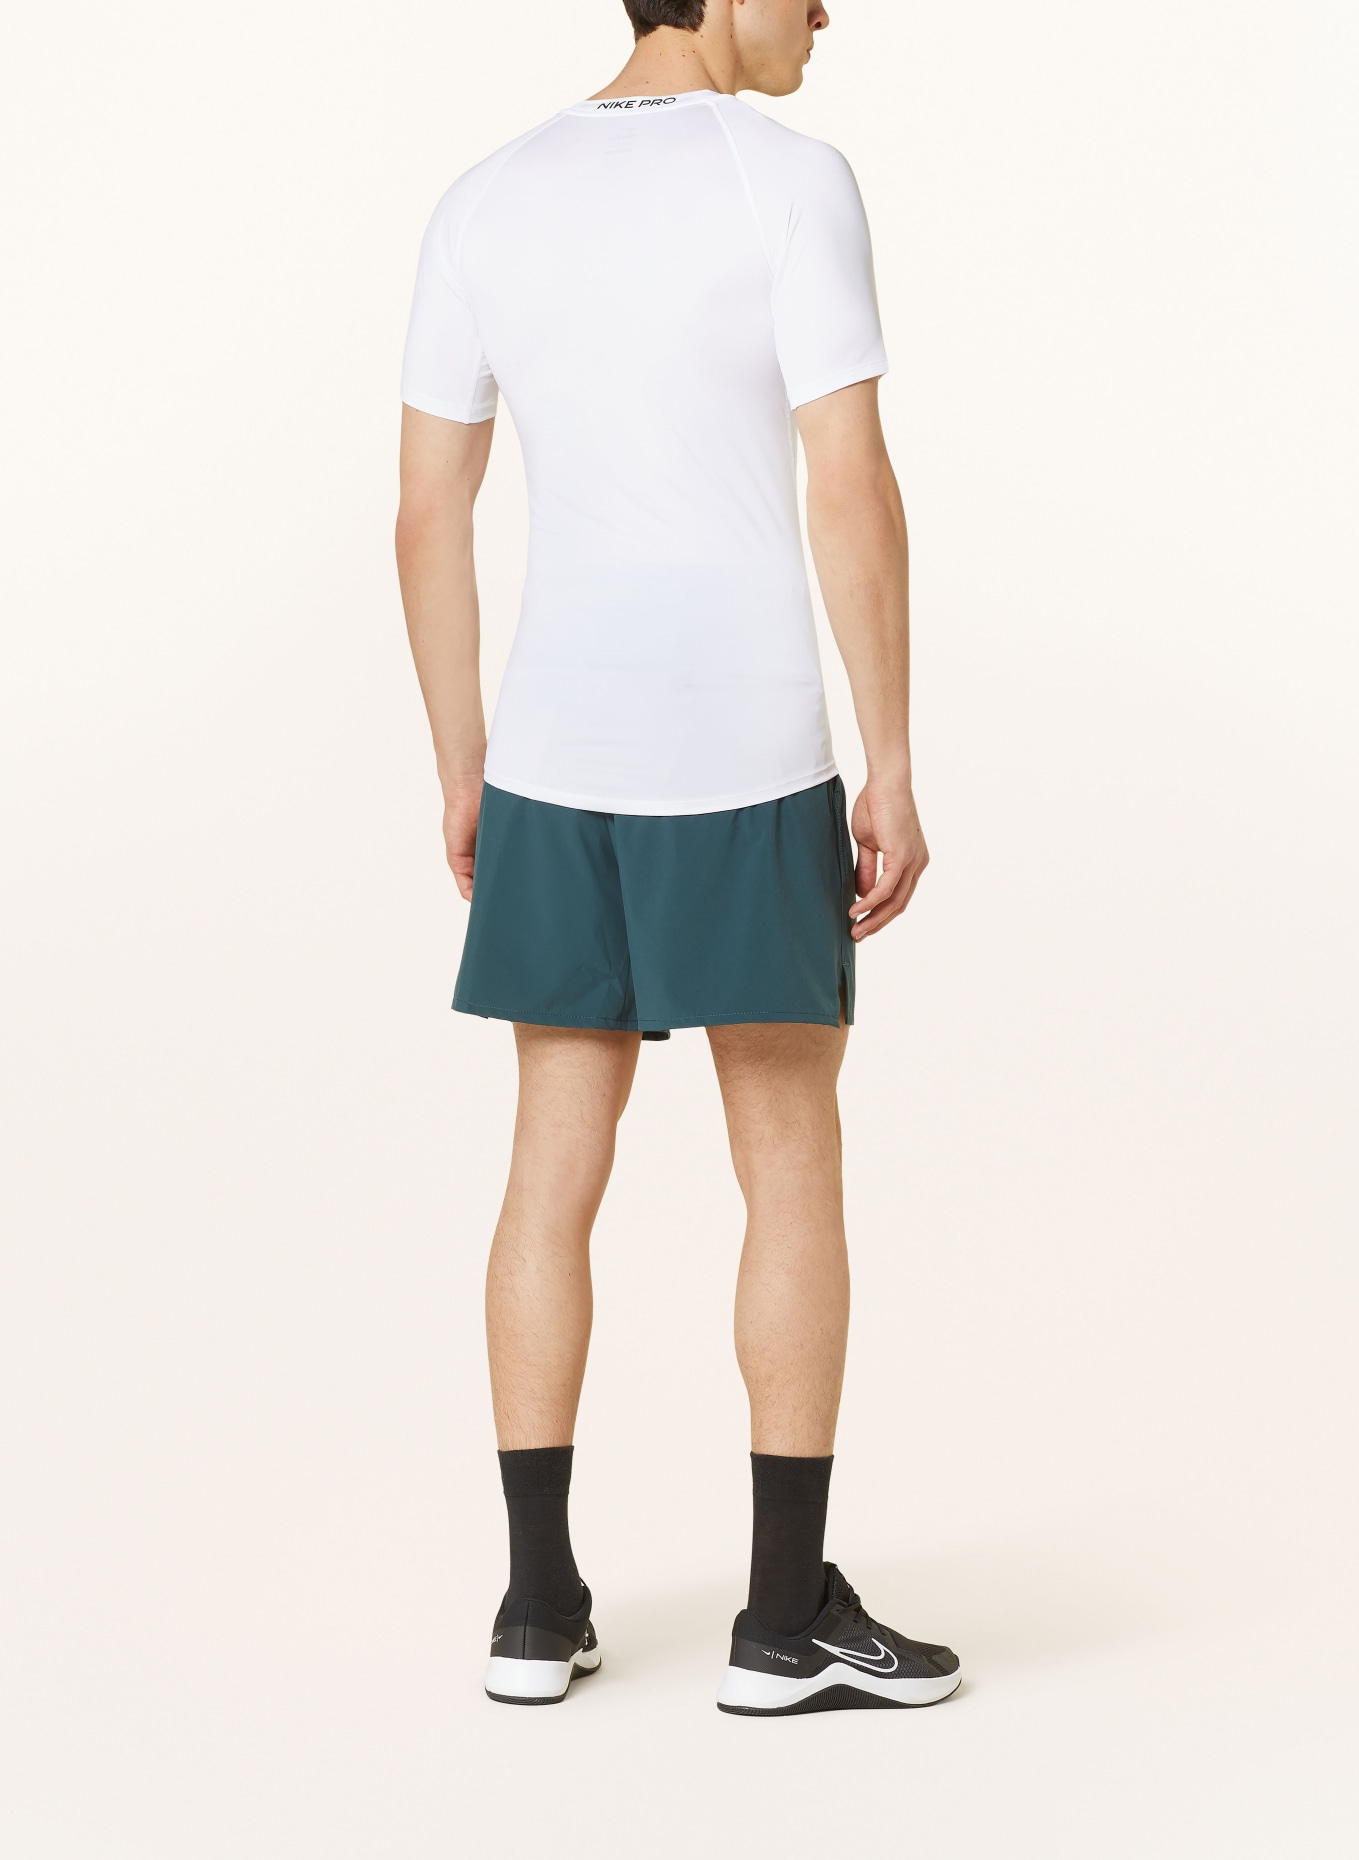 Nike T-shirt PRO, Color: WHITE (Image 3)